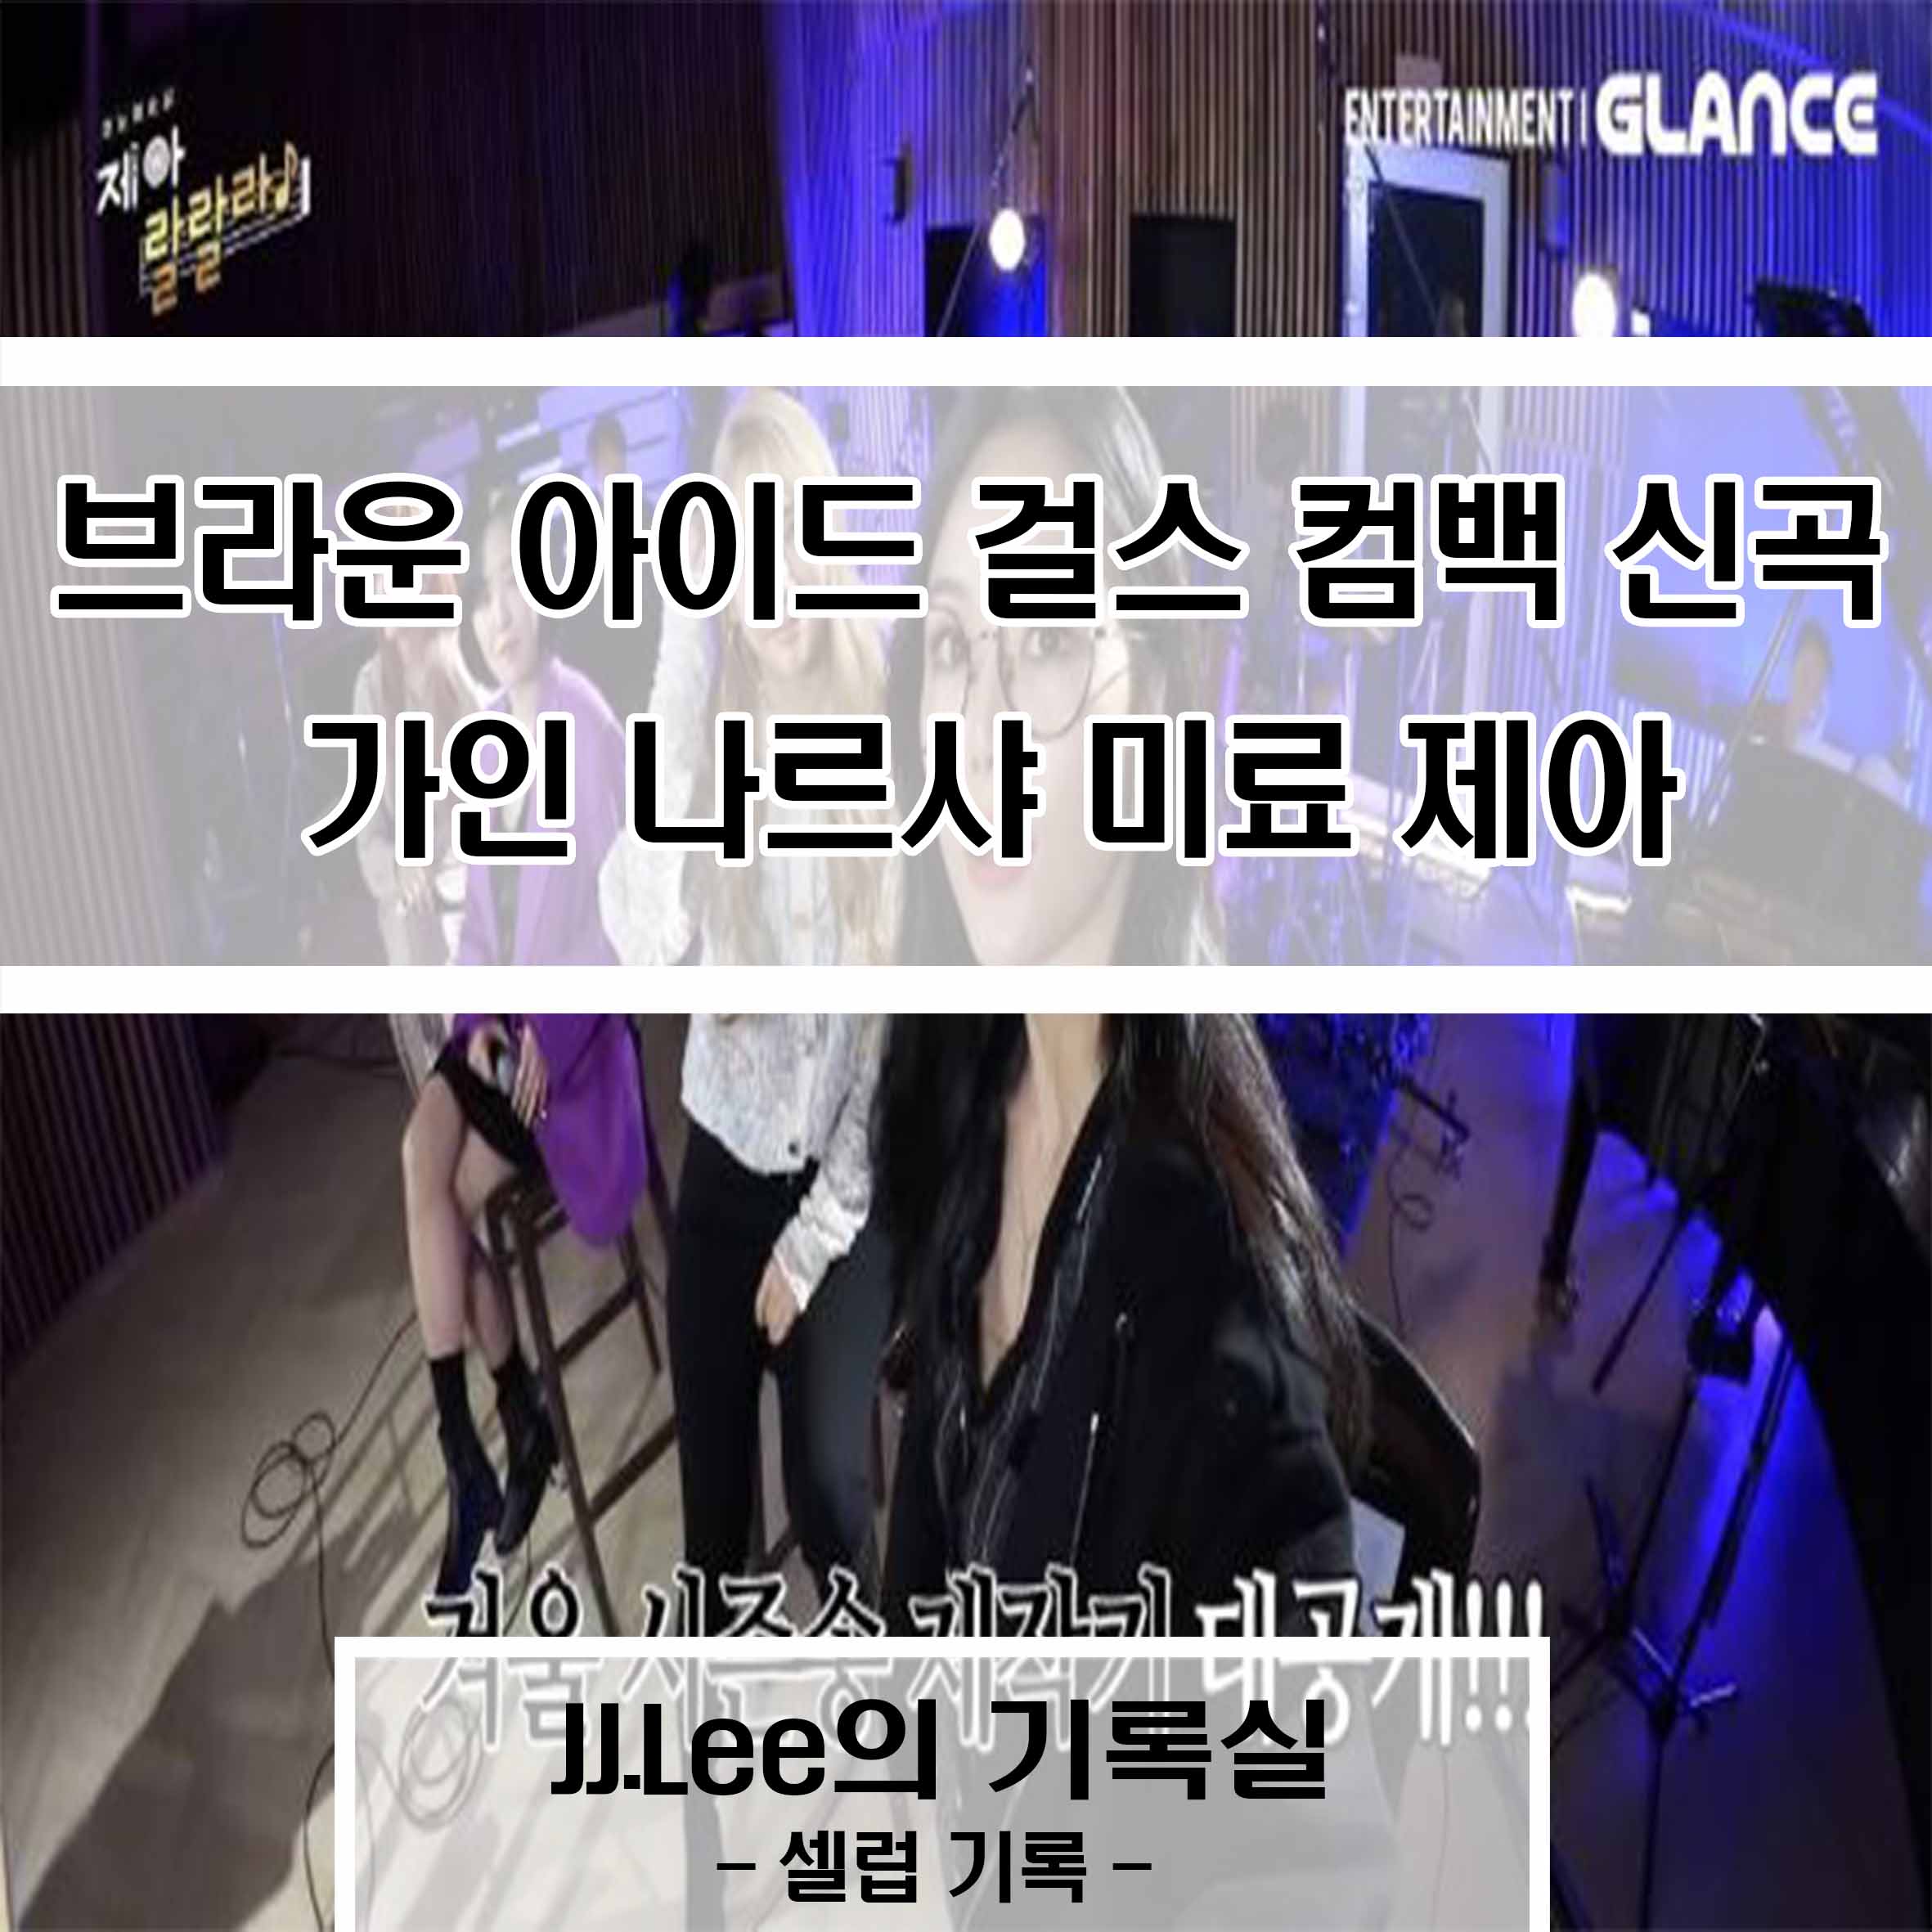 브라운 아이드 걸스 컴백 신곡 가인 나르샤 미료 제아, JJ.Lee의 기록실, 셀럽 기록실